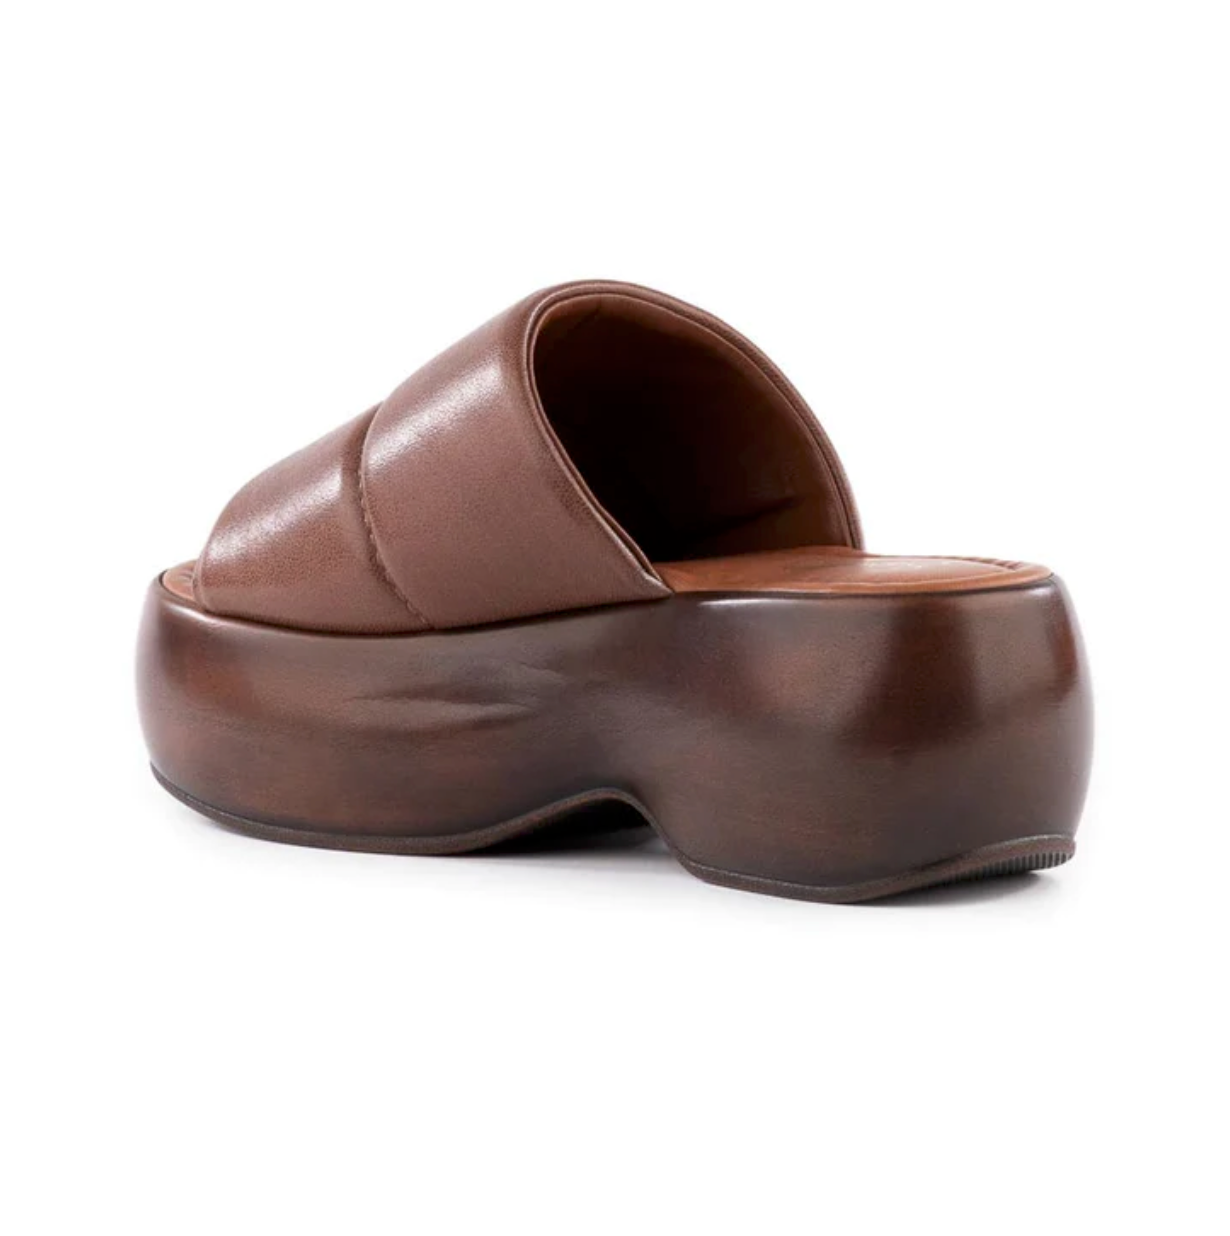 Seychelles "Sorry About It" Slip-On Platform Sandals - Brown - Jaunts Boutique 